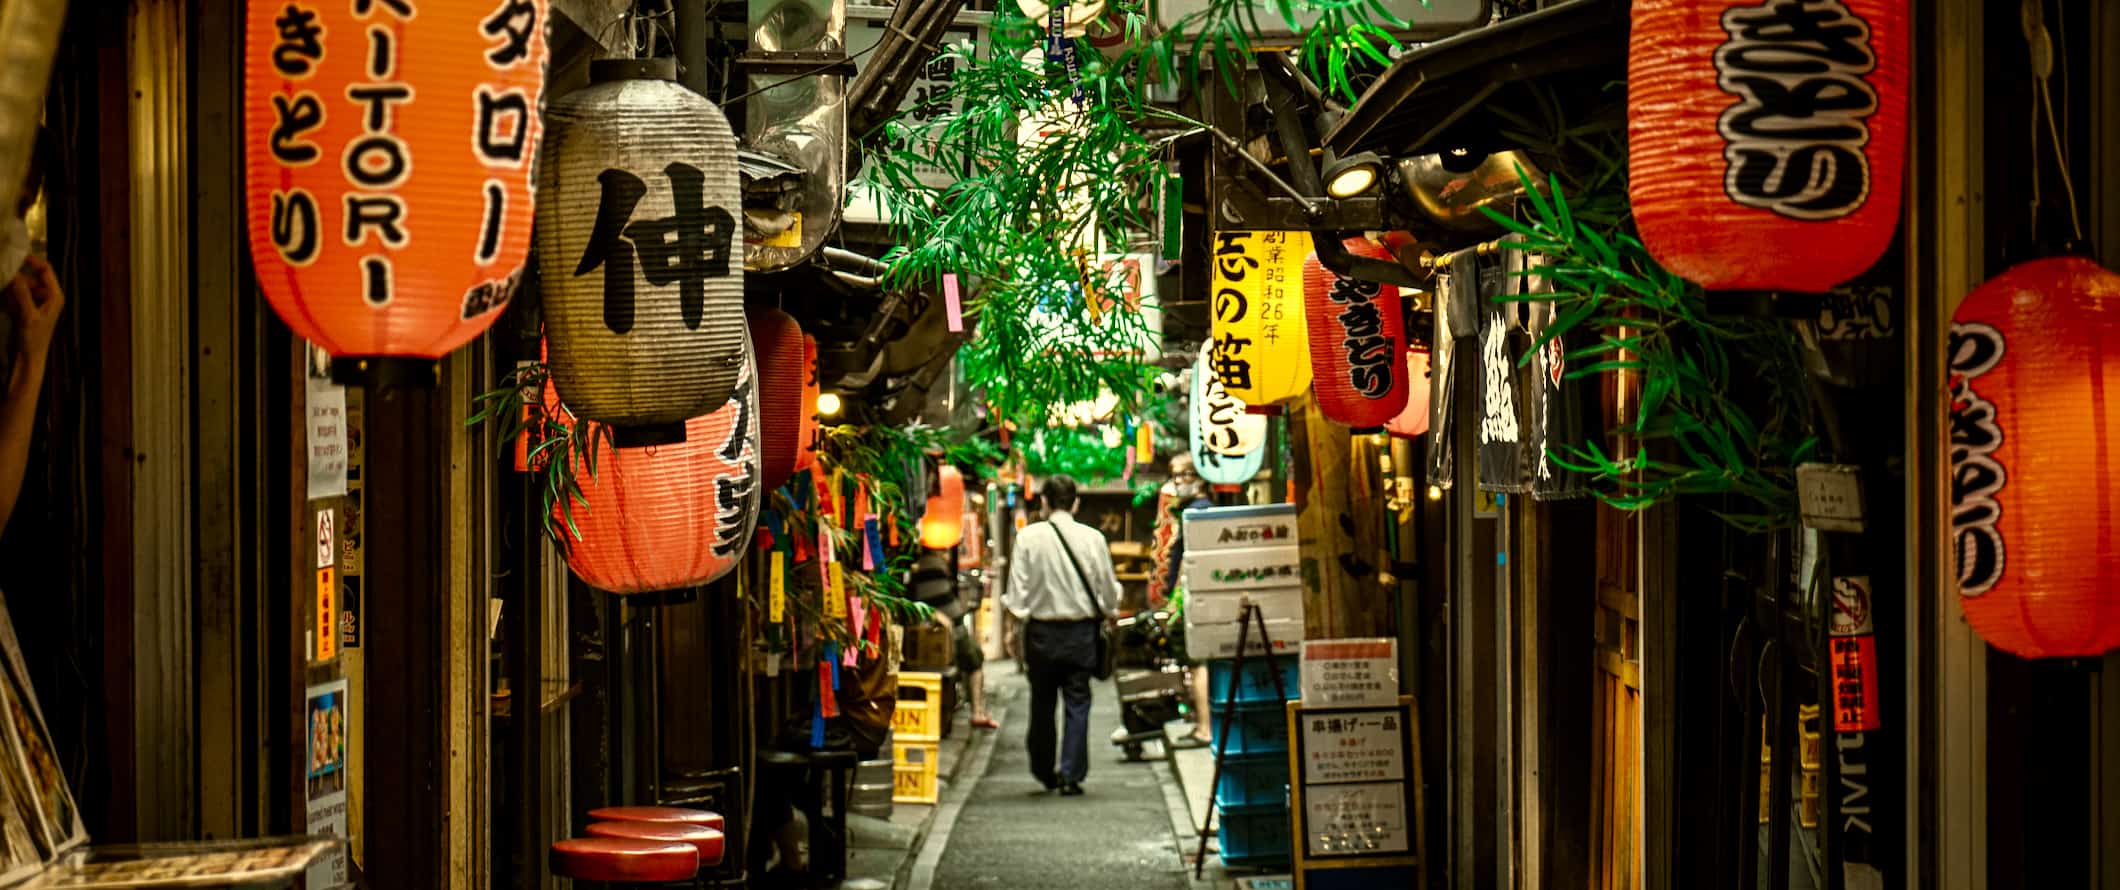 Um homem caminha por um beco estreito repleto de lojas em Tóquio, Japão.